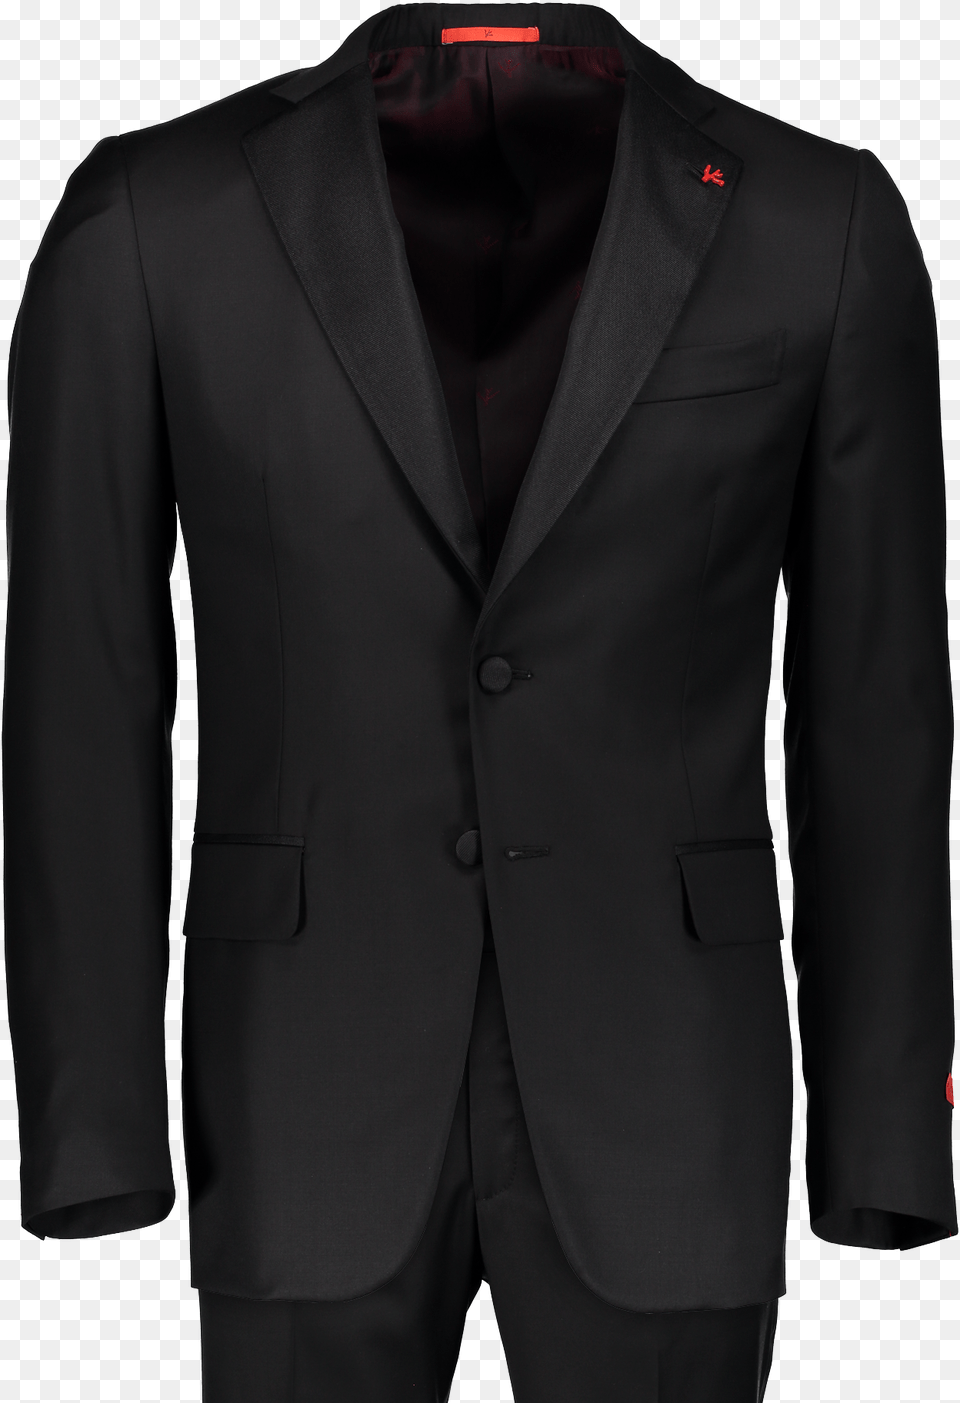 Base Gregory Tuxedo Suit Jacket, Blazer, Clothing, Coat, Formal Wear Png Image